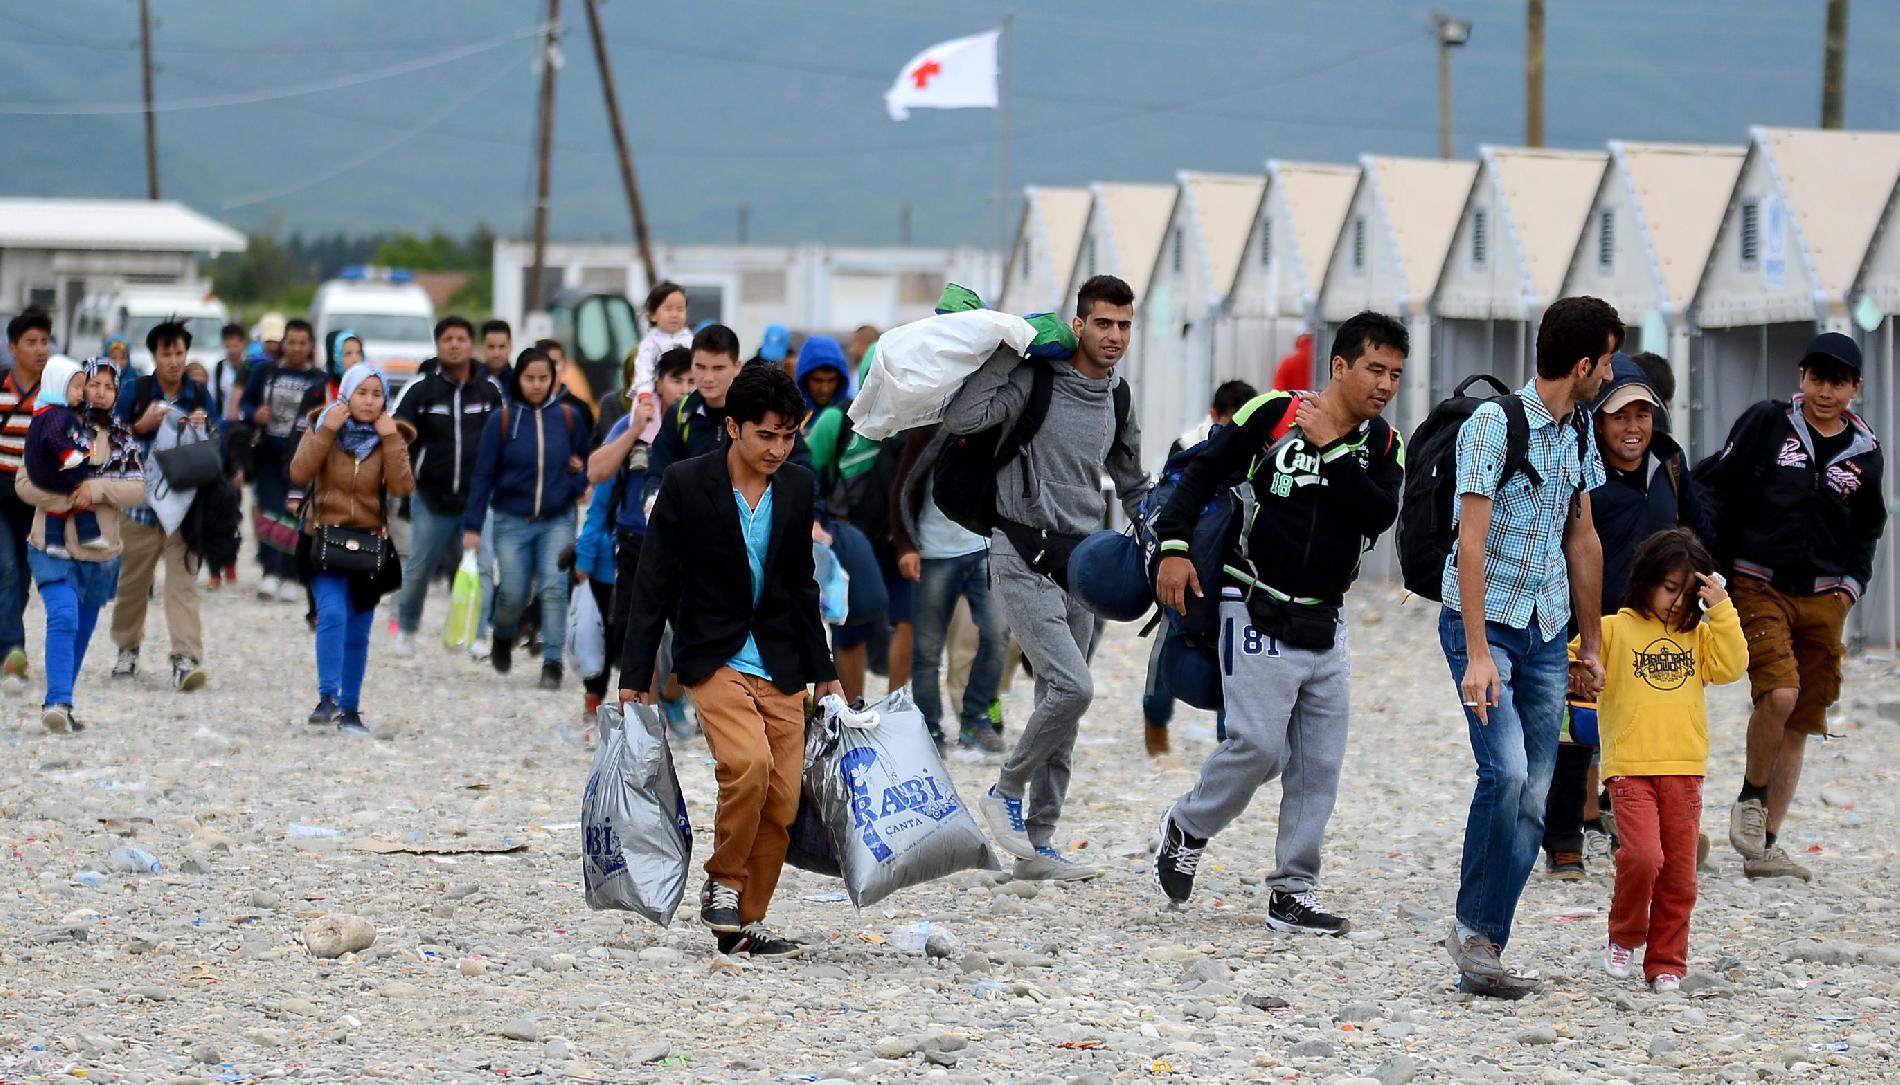 Группа эмигранты. Мигранты в Европе. Миграция людей. Европейский миграционный кризис. Проблемы беженцев.